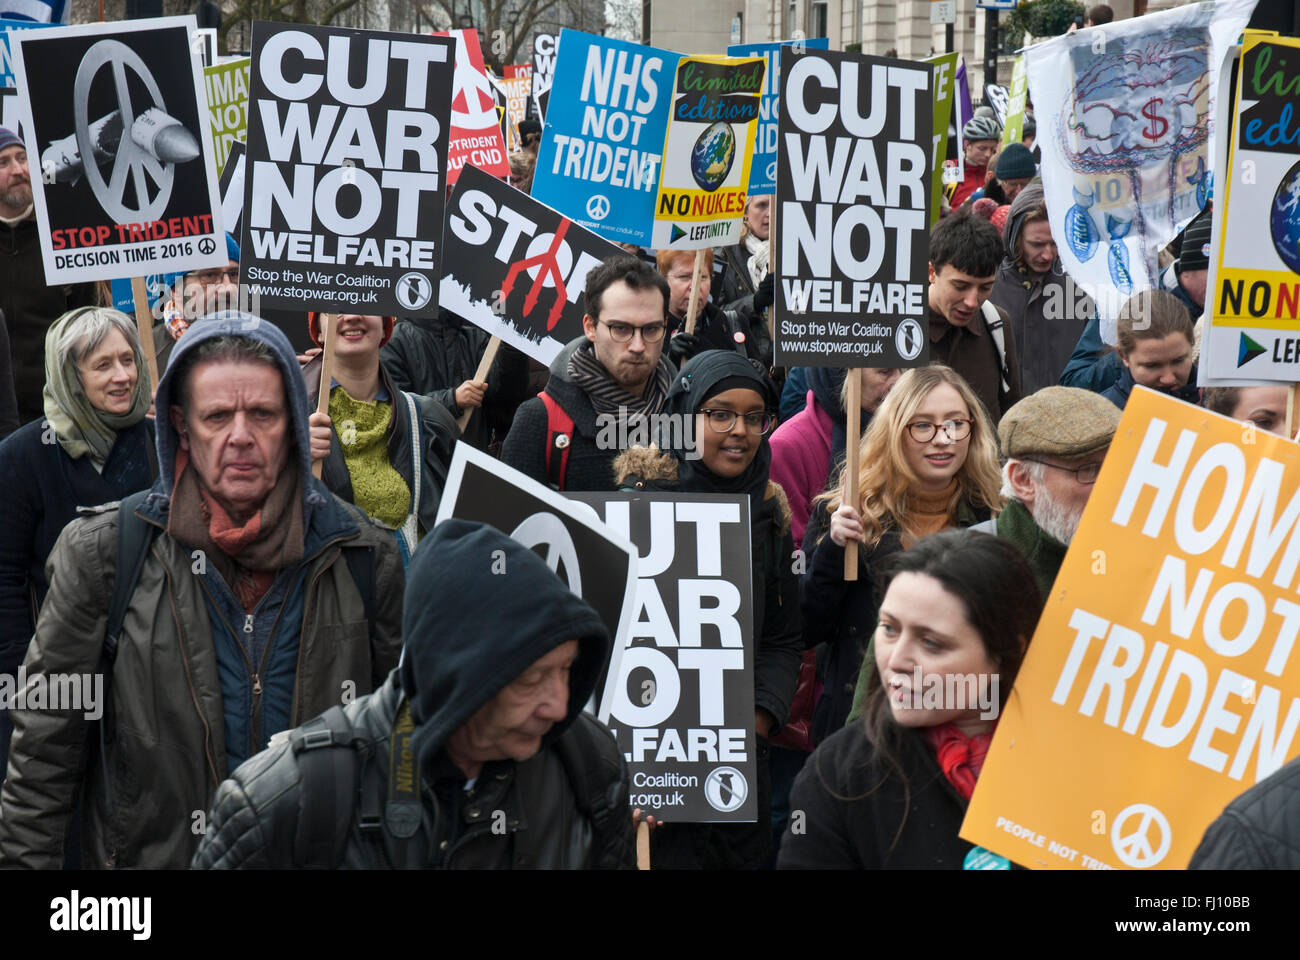 Les manifestants contre Trident ; ils portent des bannières 'Couper la guerre non pas du bien-être social' 'NHS' Trident pas. Des manifestants de l'âge et l'origine ethnique. Banque D'Images